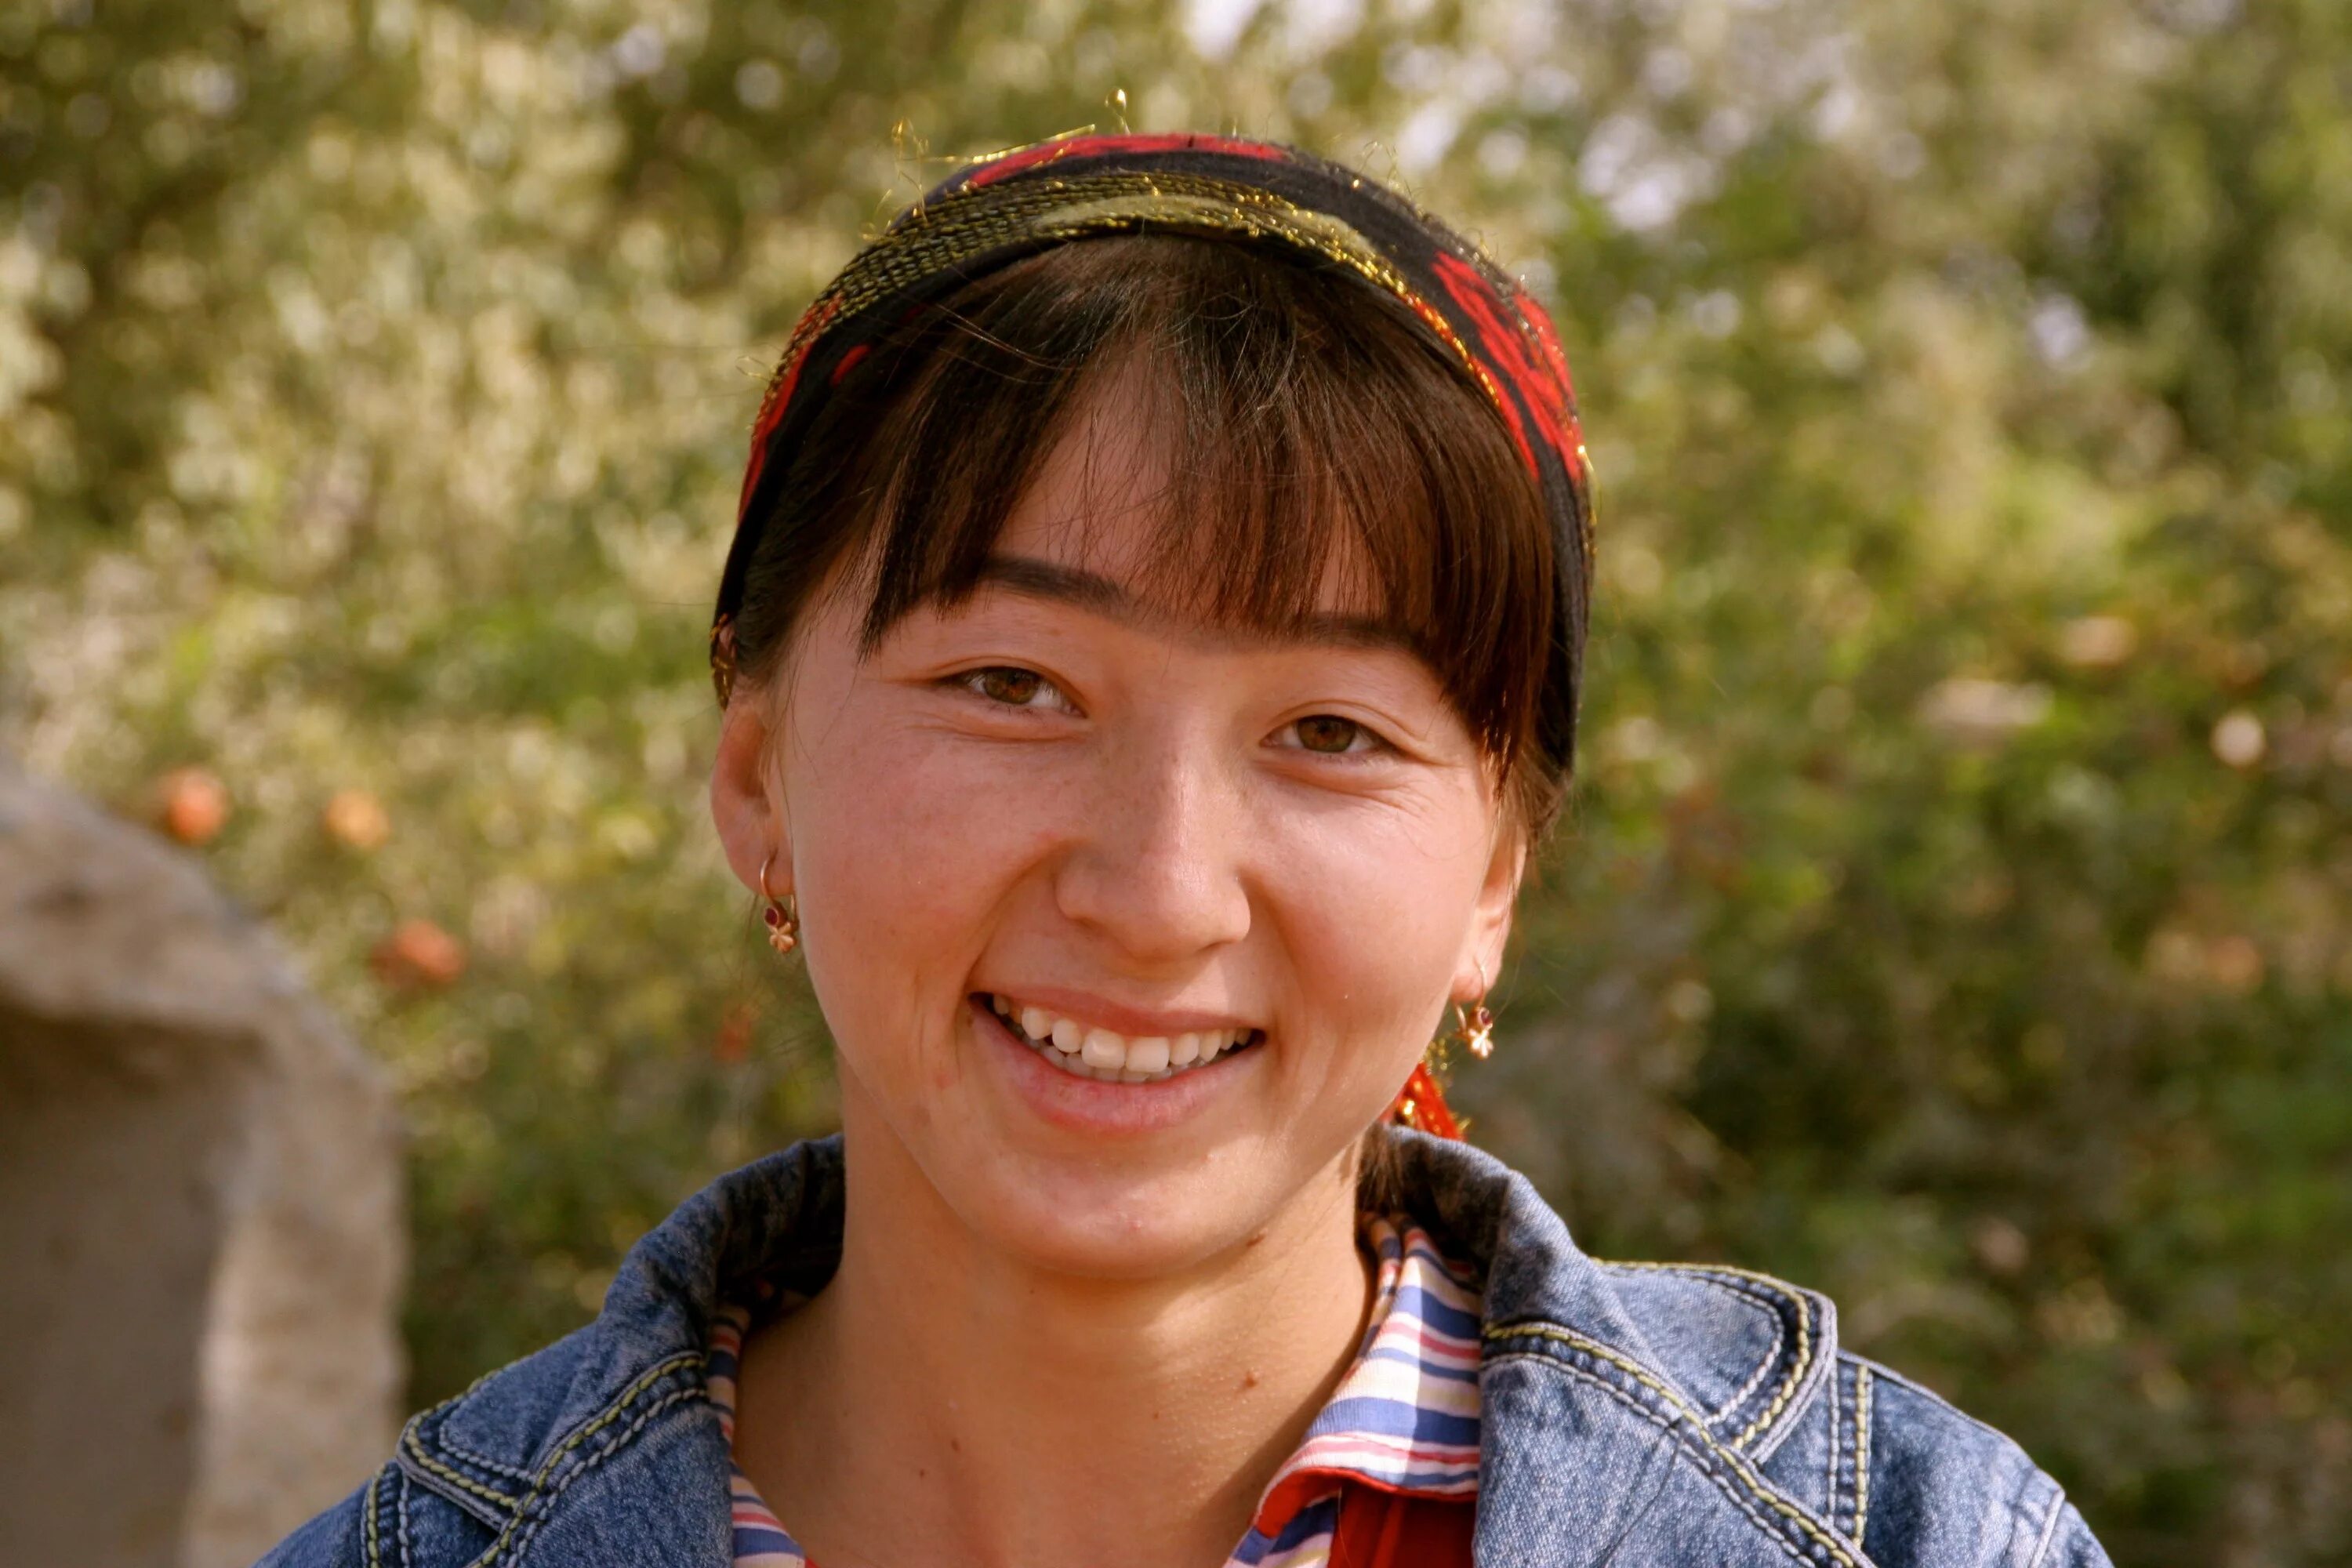 Узбекские фотка. Узбекские женщины. Узбекские женщины красивые. Обычные узбекские девушки. Узбекские женщины 40 лет красивые.